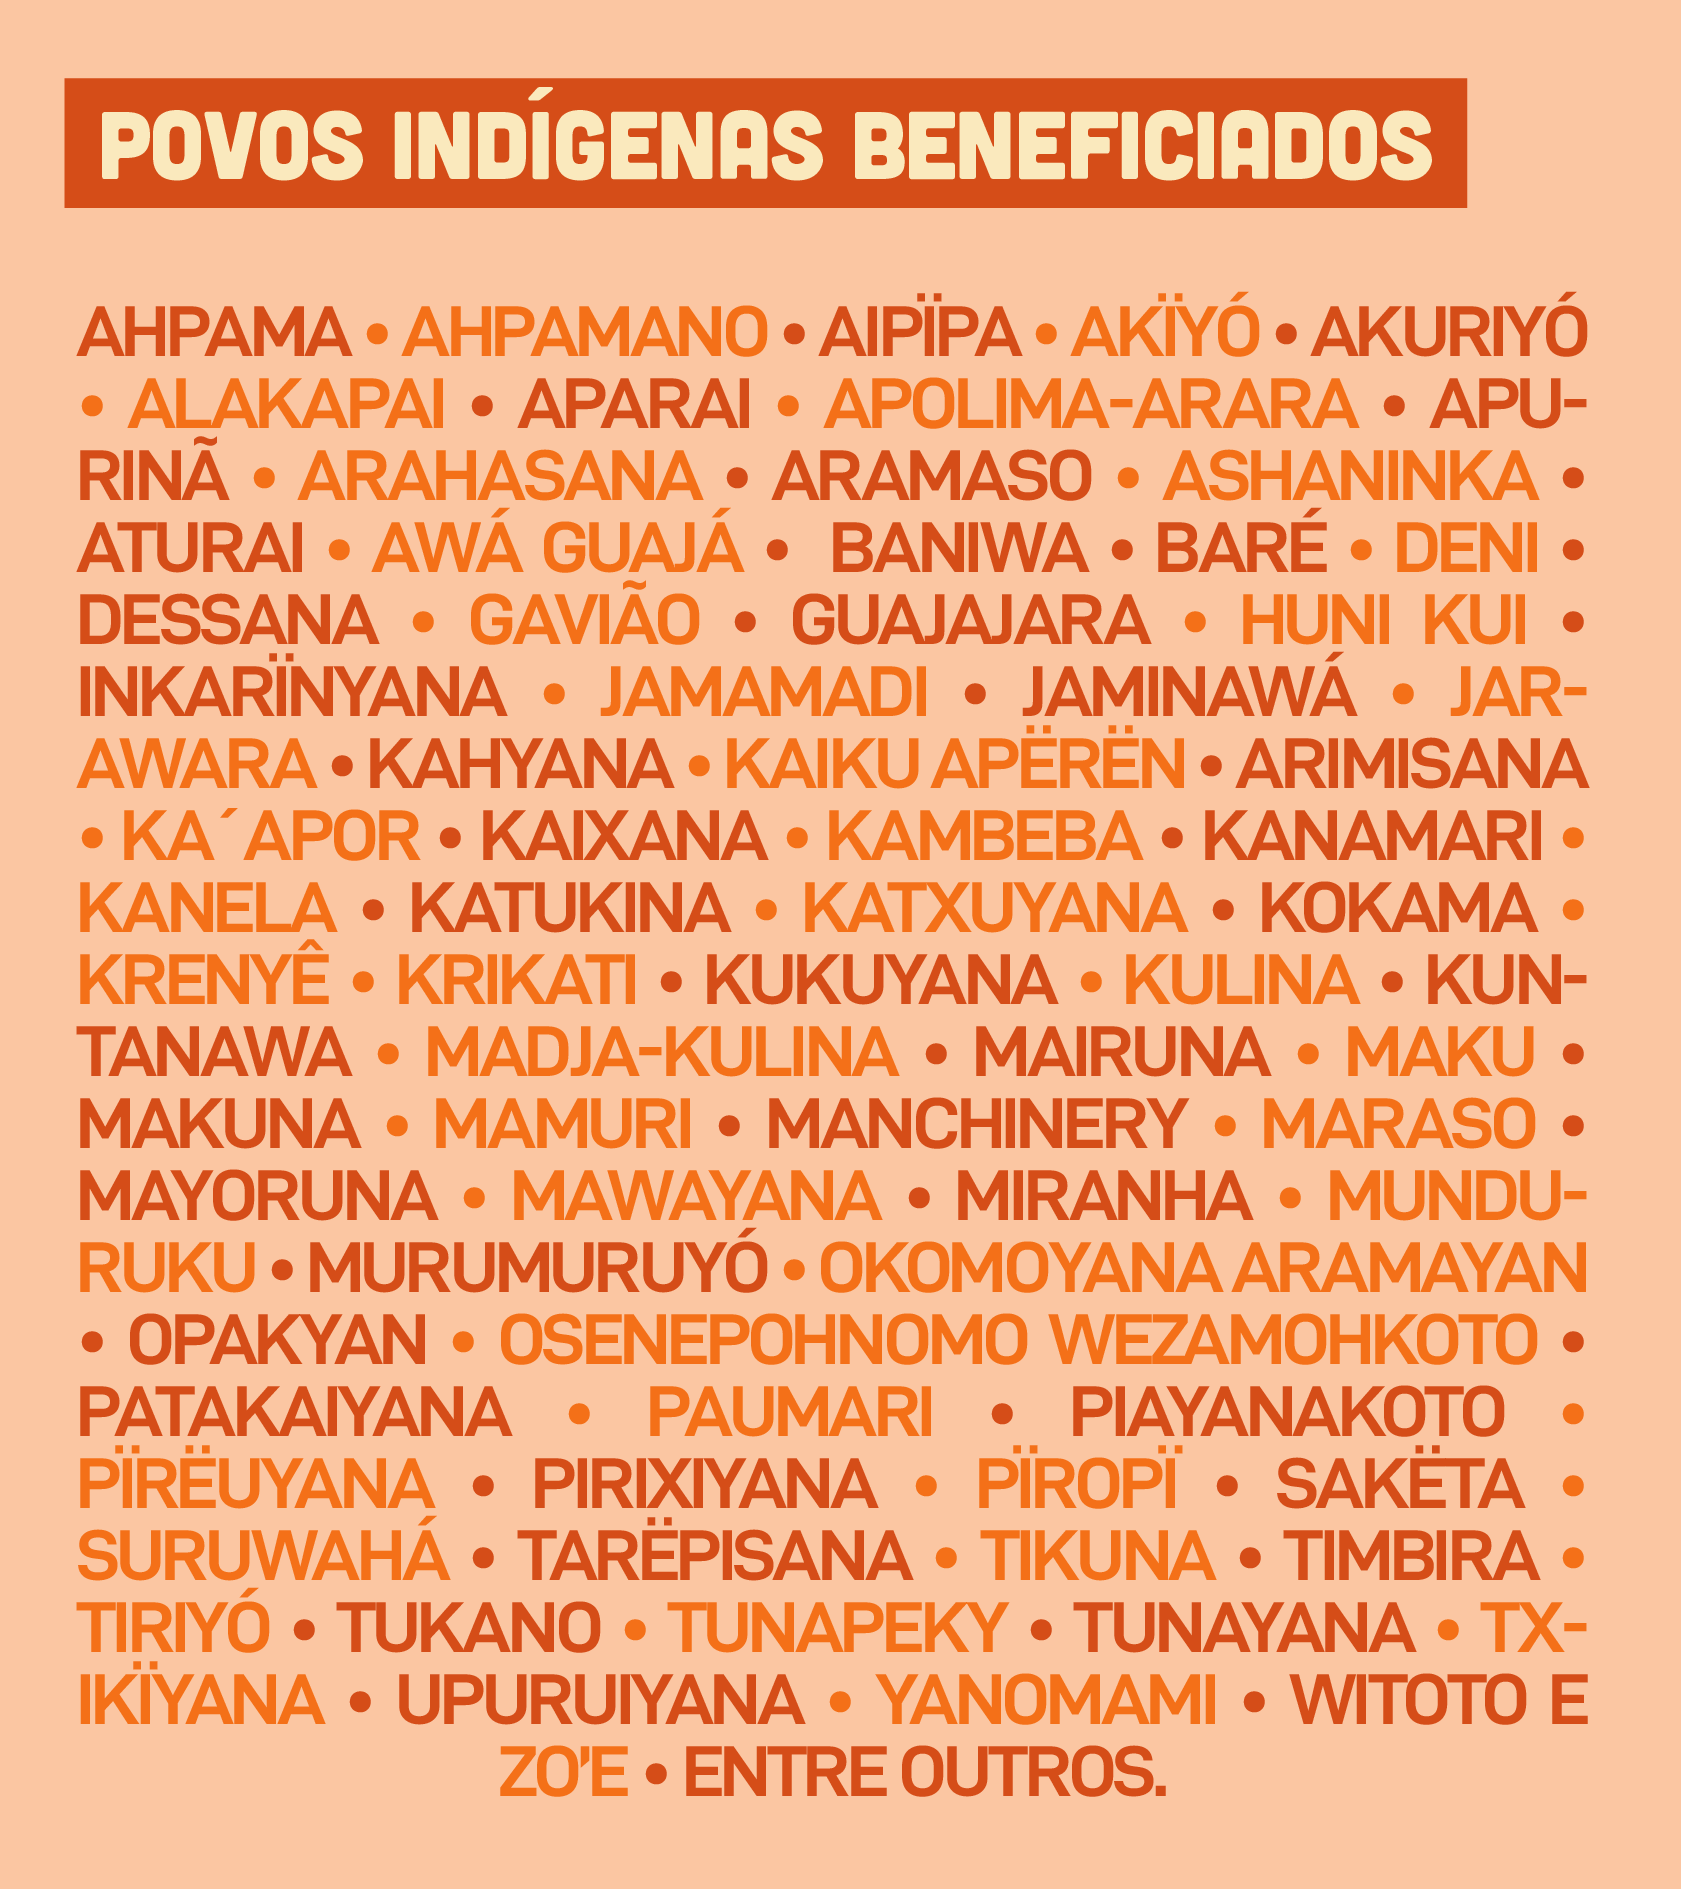 Povos indígenas beneficiados